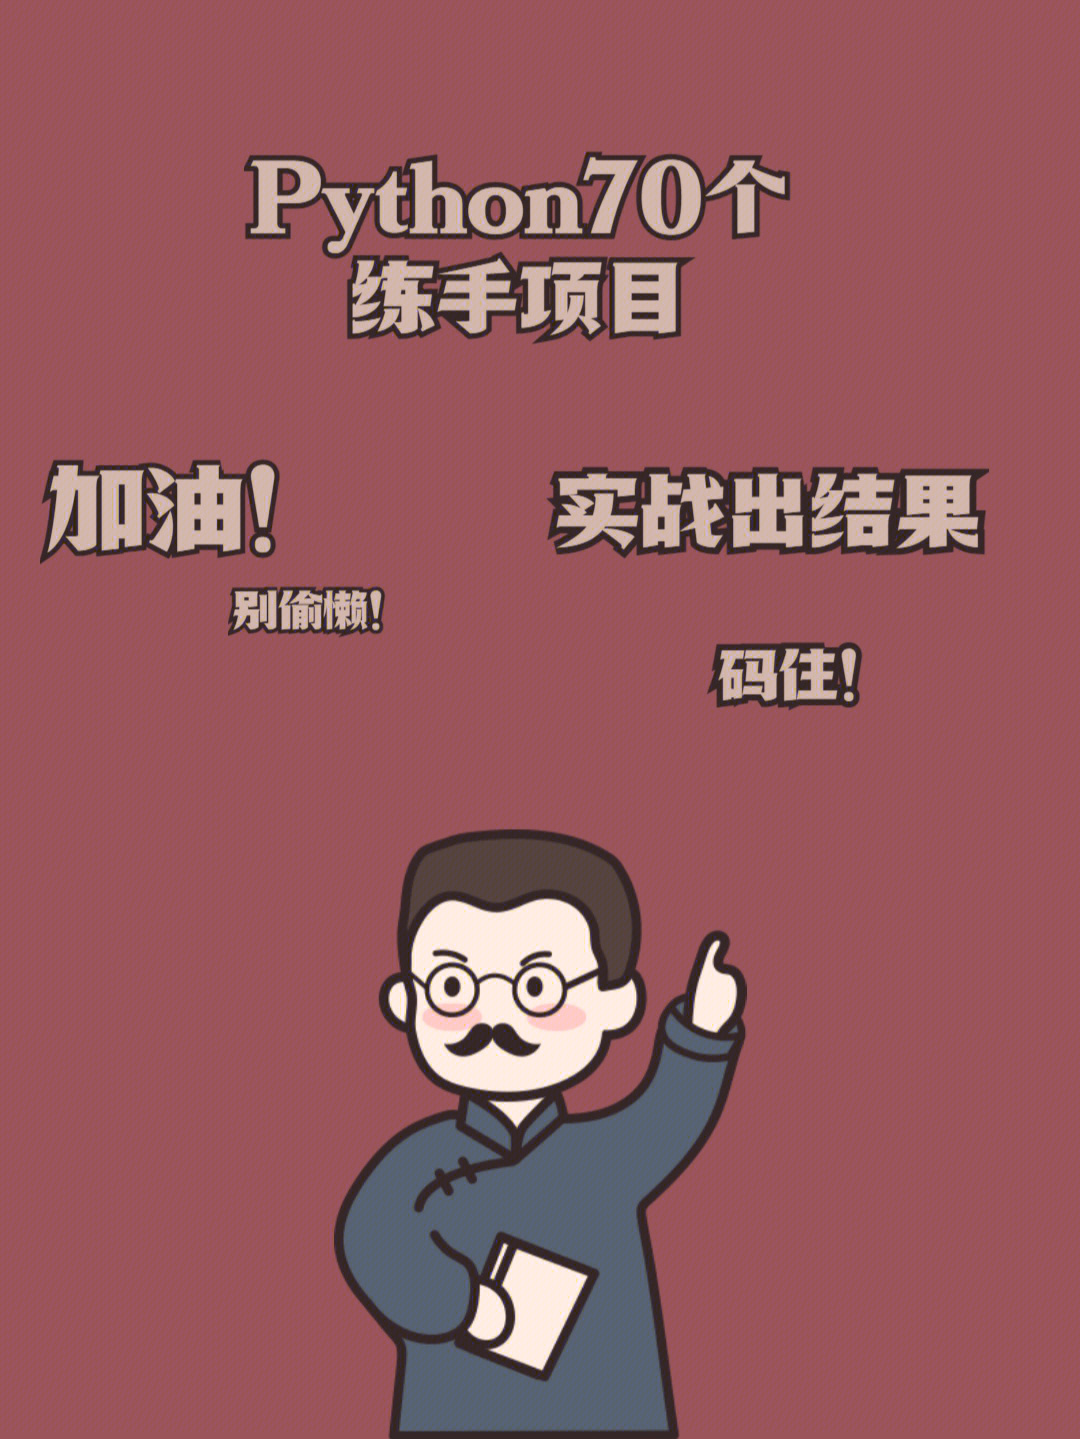 python程序员桌面壁纸图片